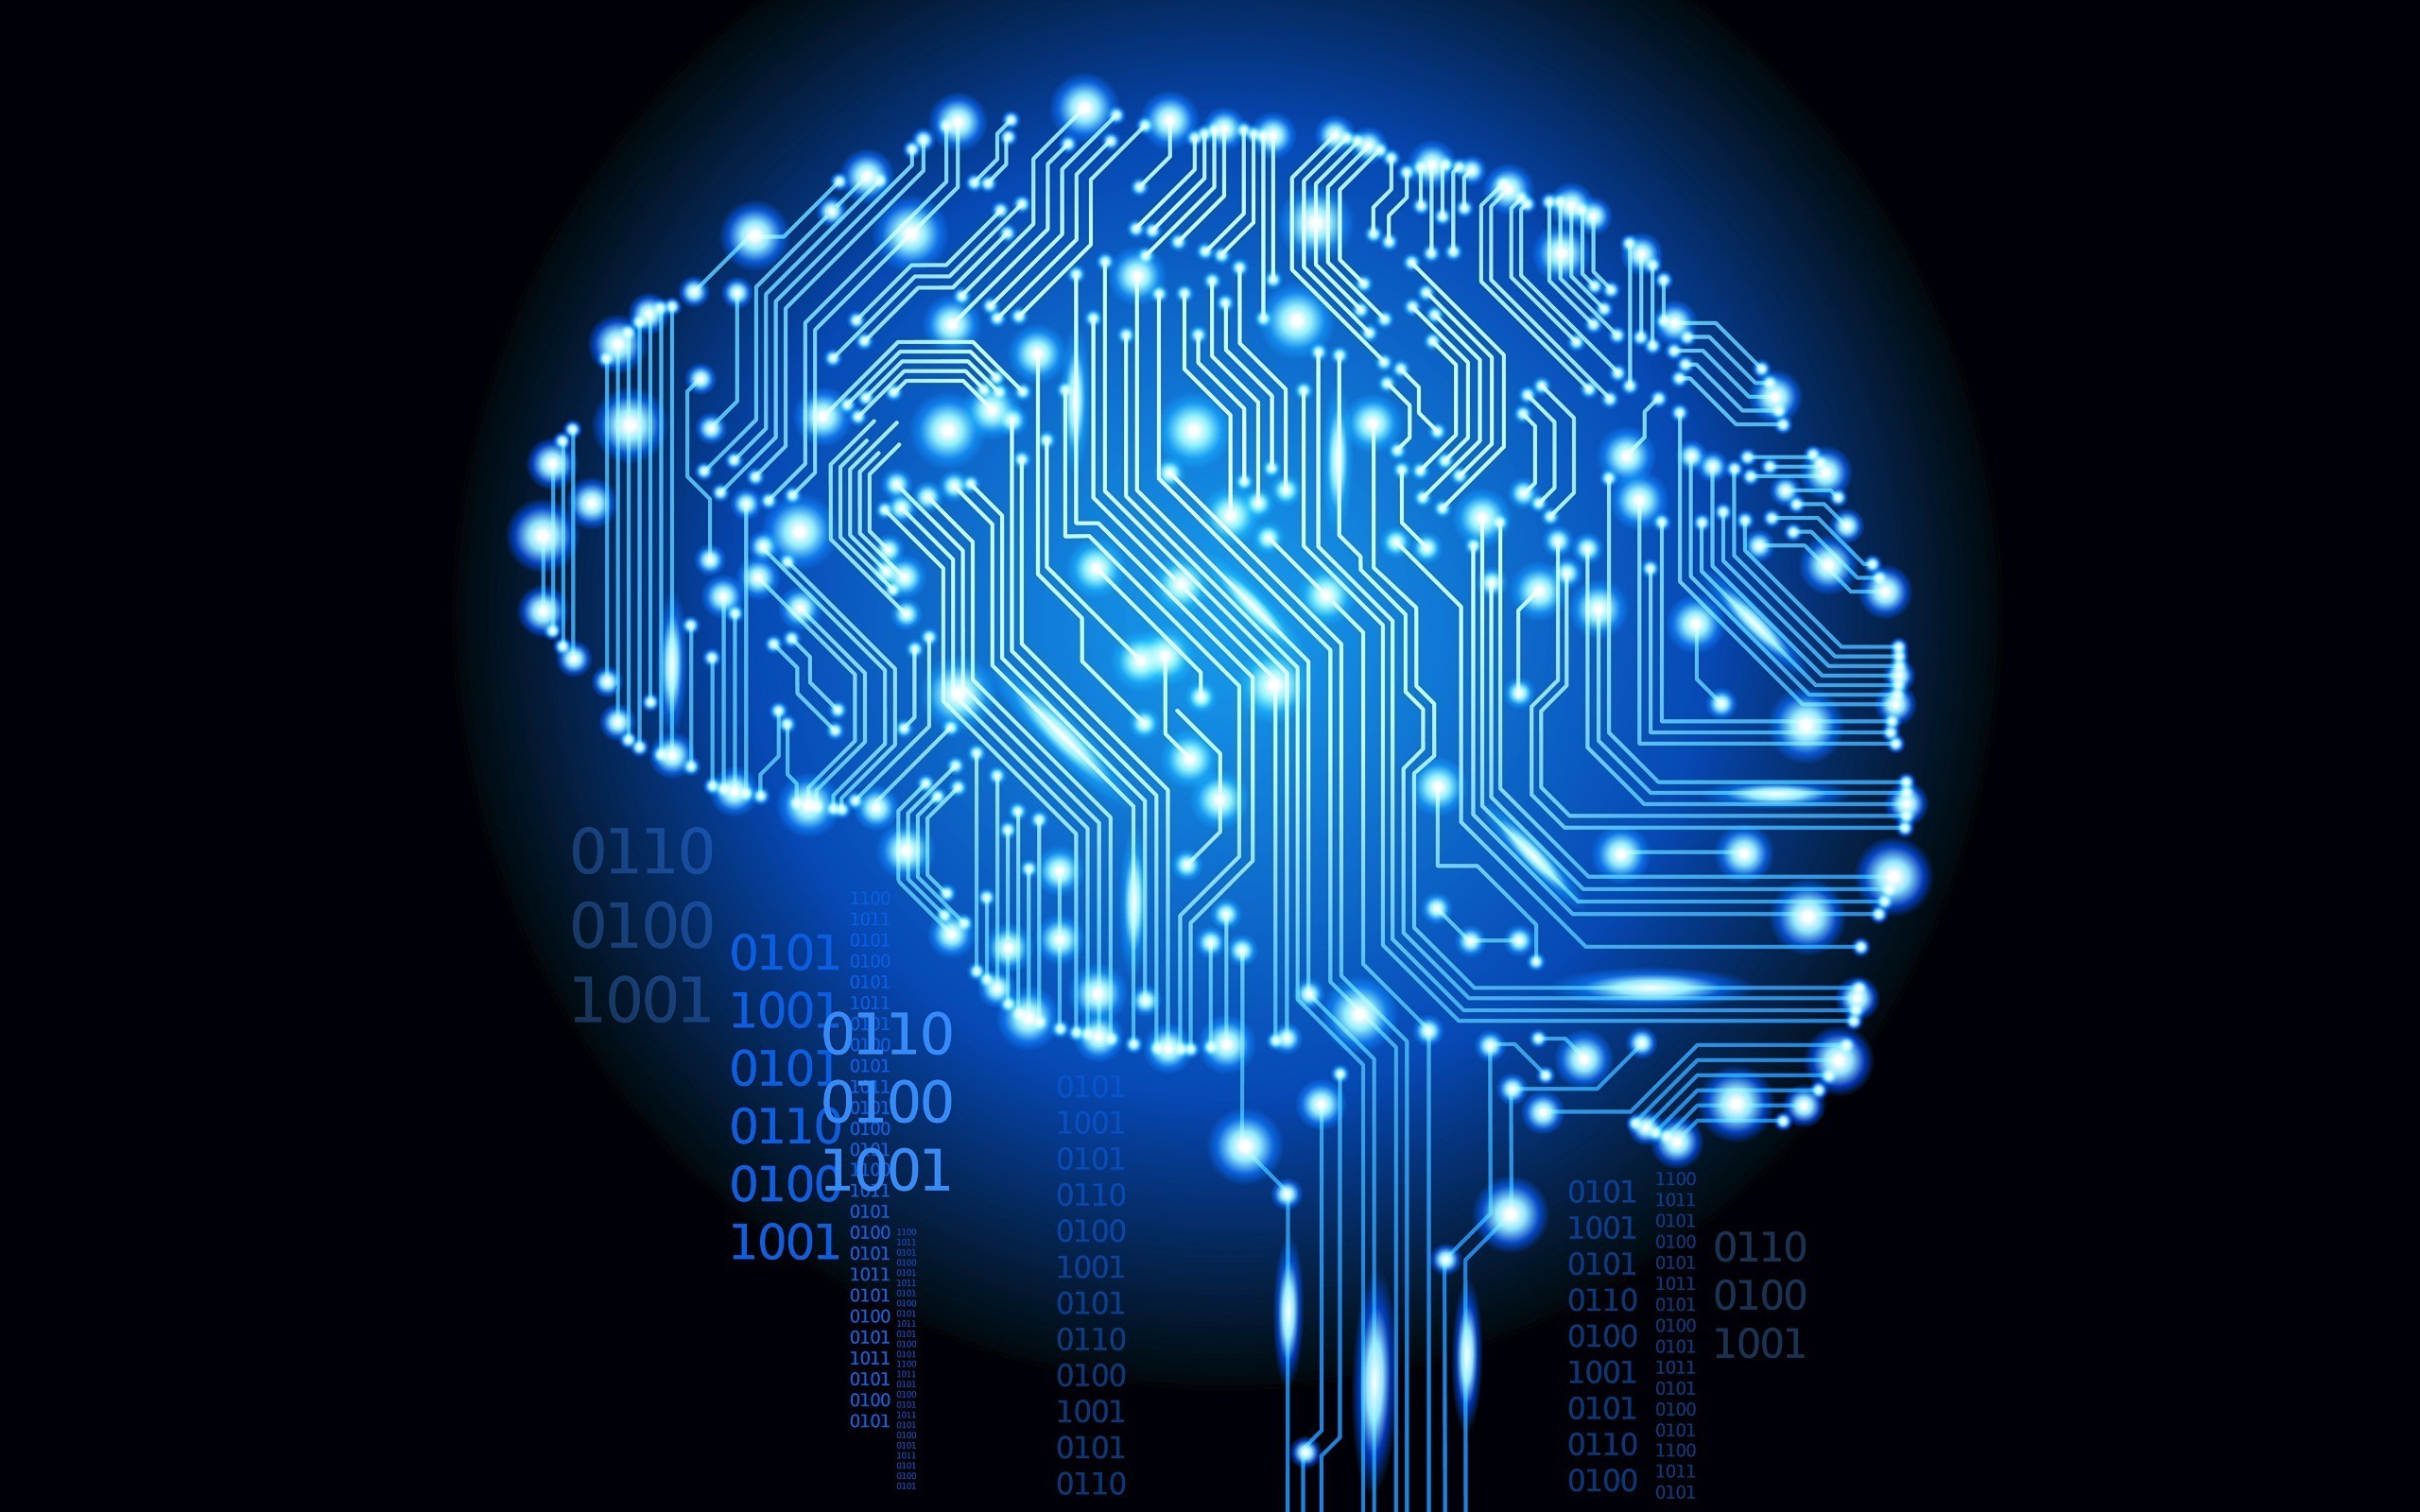 A glowing brain on an electronic circuit board